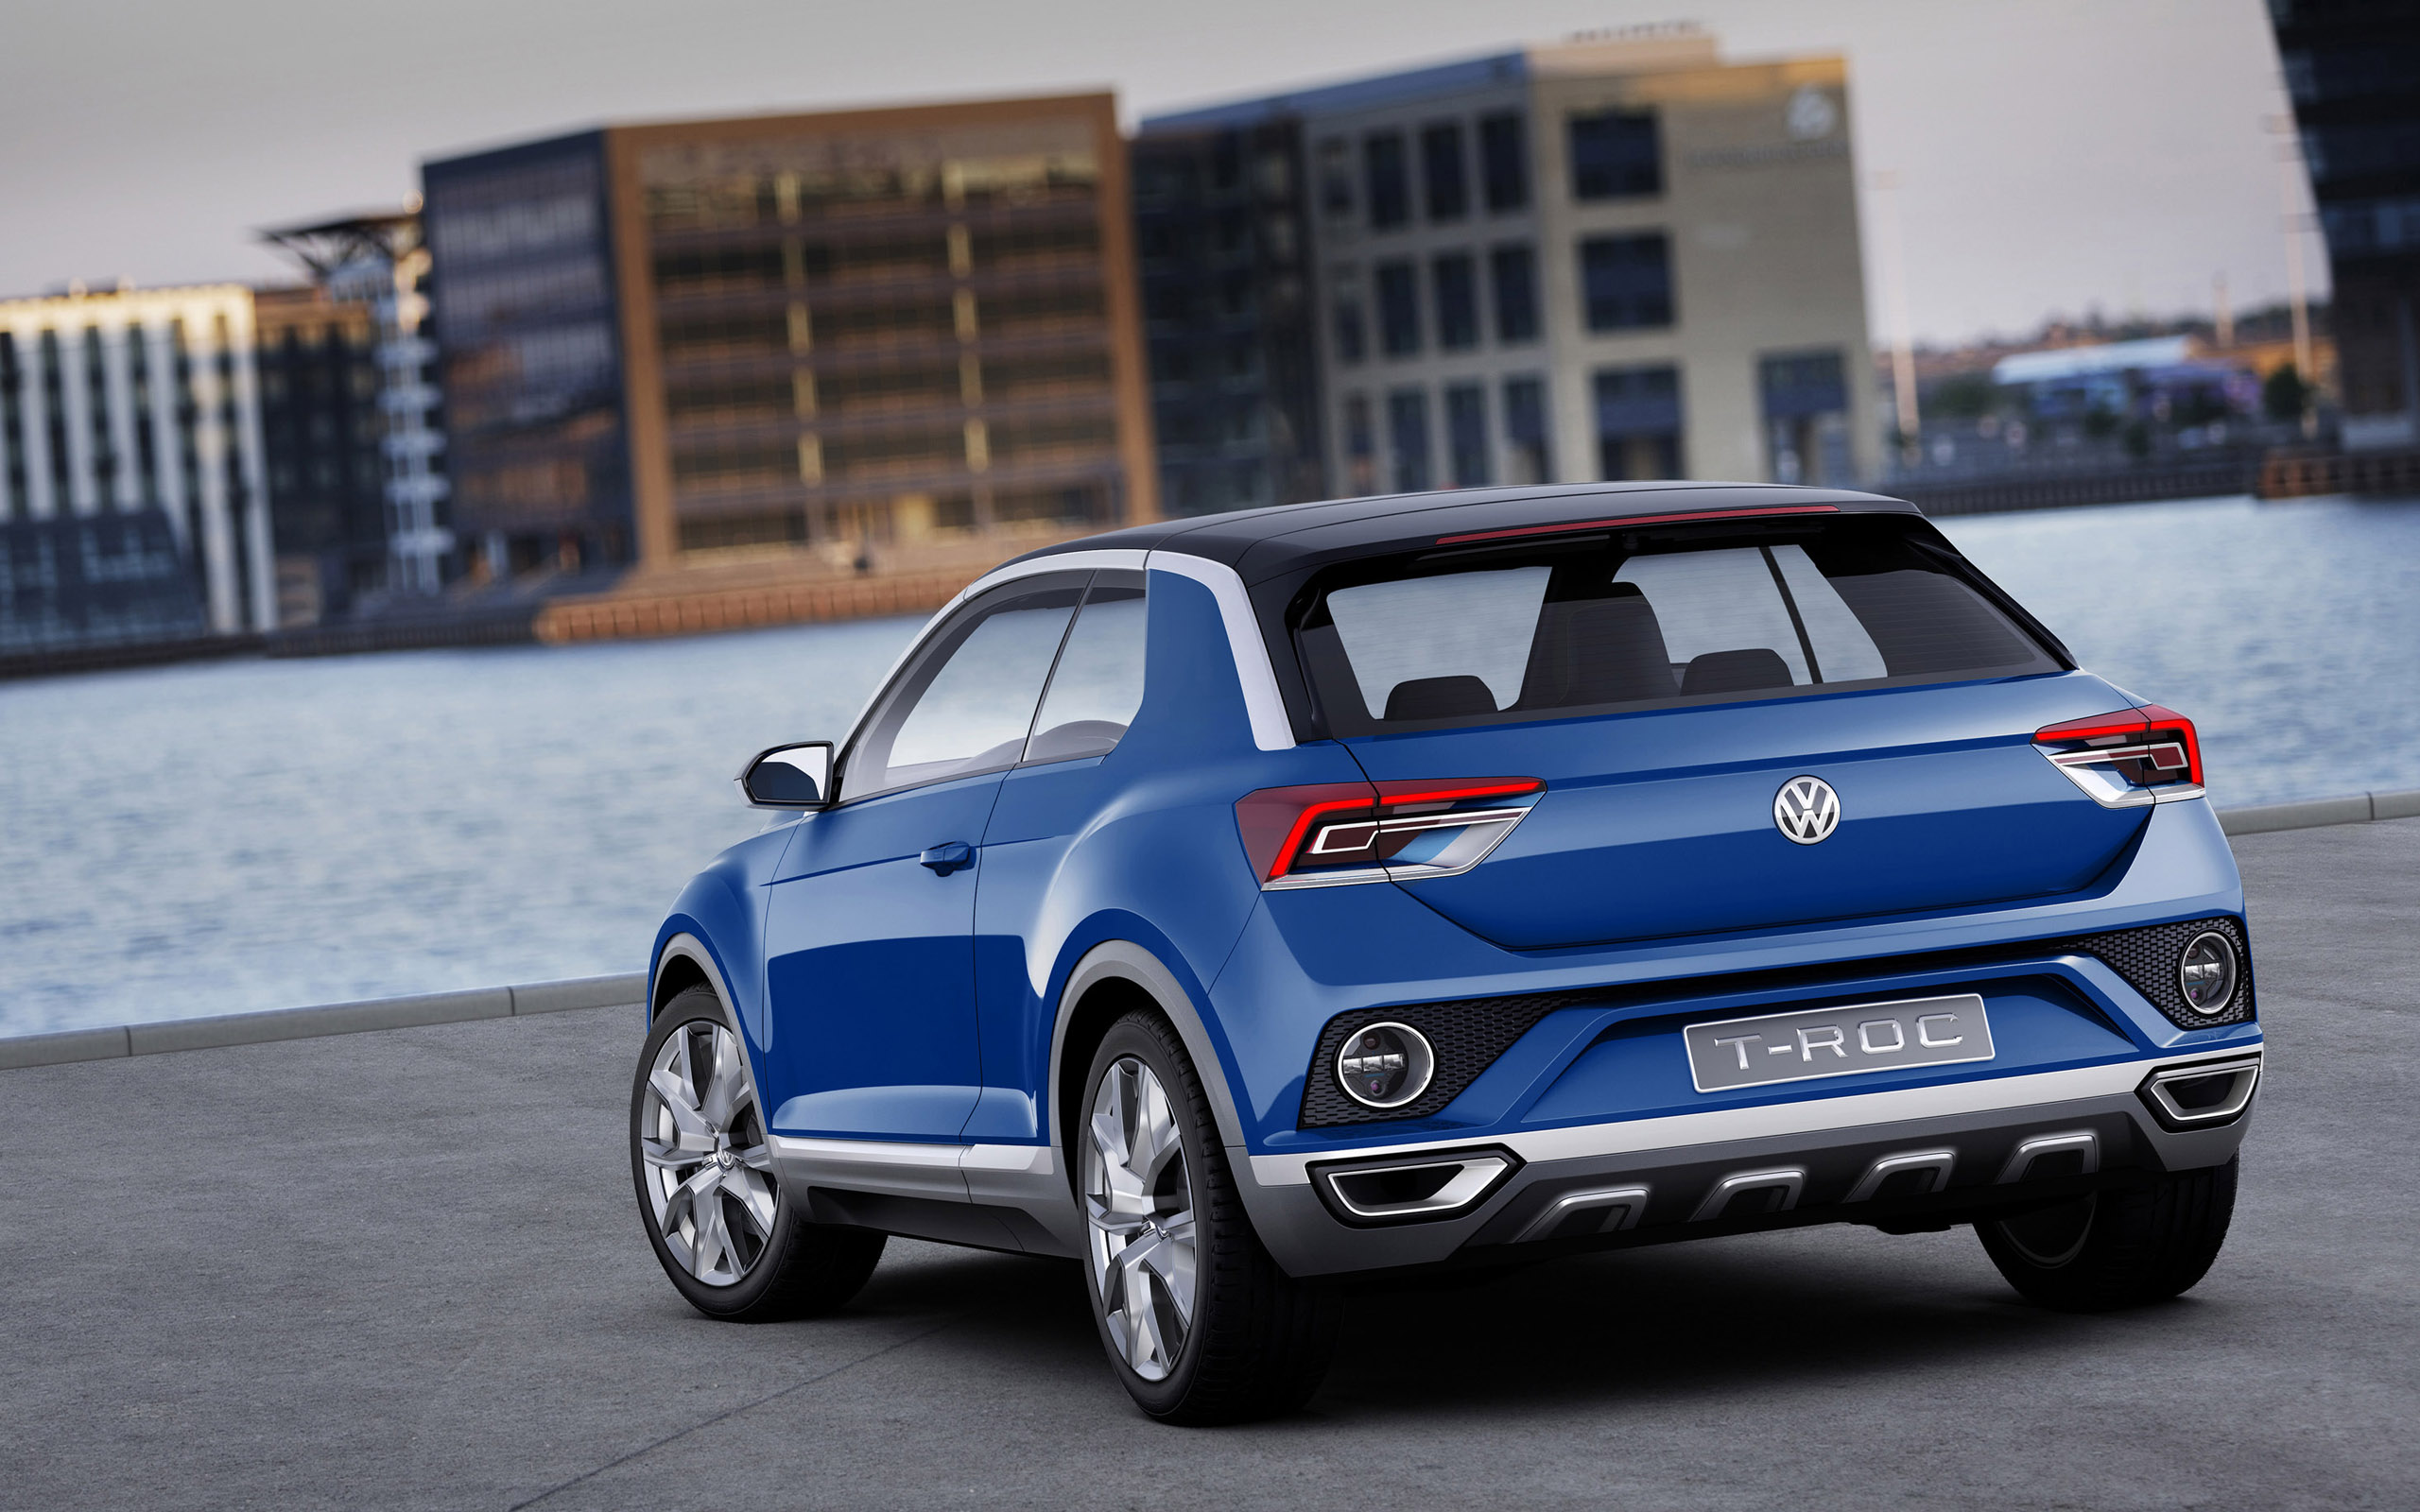  2014 Volkswagen T-Roc Concept Wallpaper.